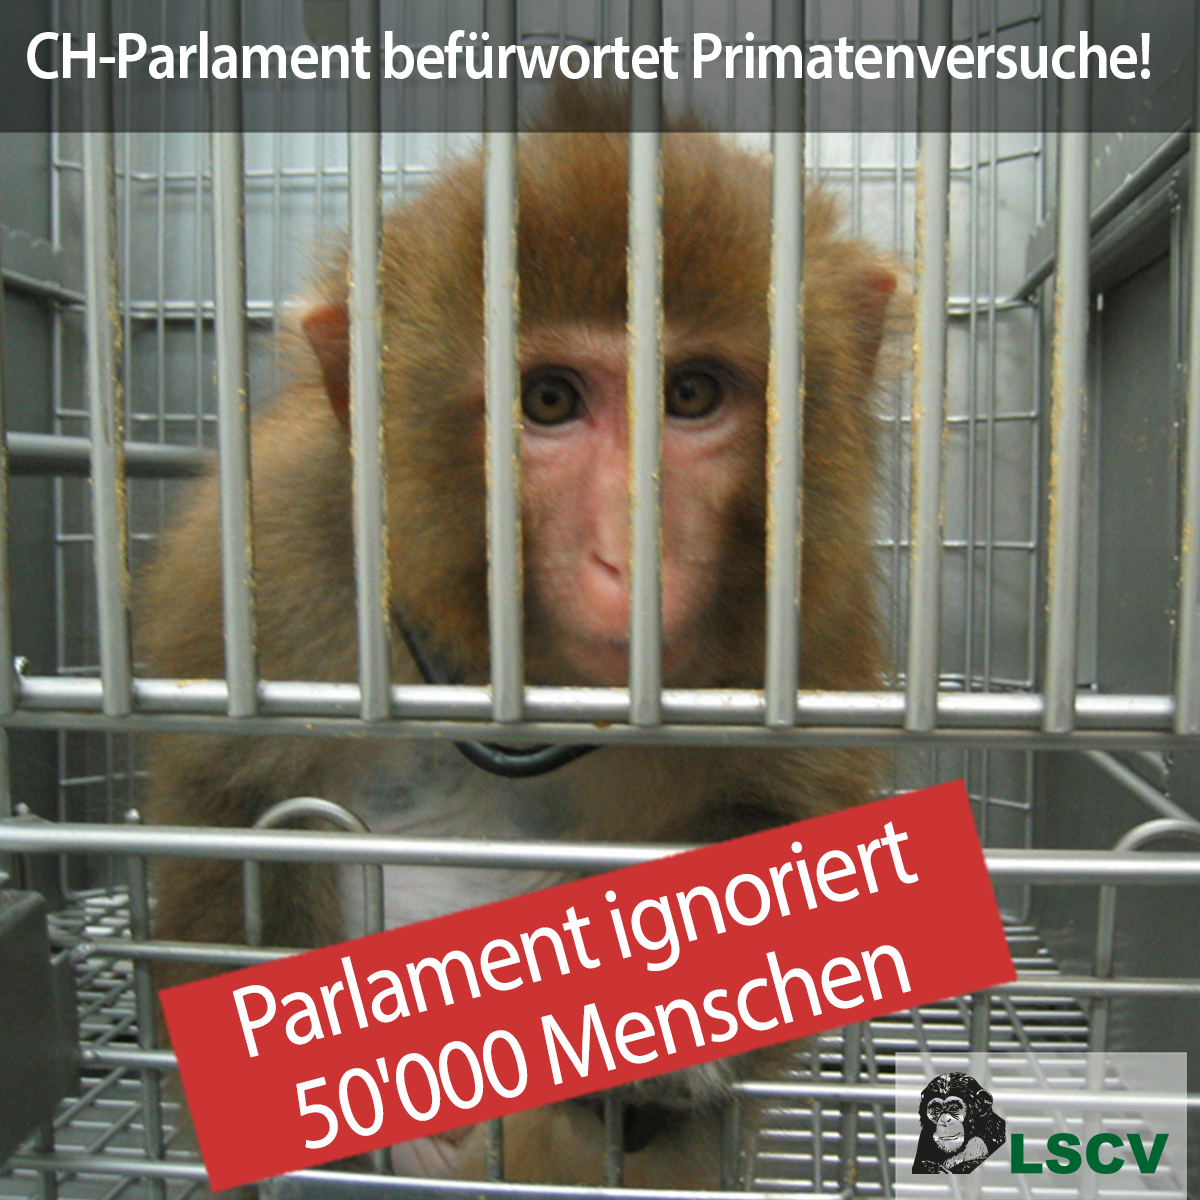 Ein Rhesusaffe sitzt in einem Käfig und schaut in die Kamera. Darüber zwei Kacheln mit den Texten: "CH-Parlament befürwortet Primatenversuche!" und "Parlament ignoriert 50'000 Menschen" sowie dem Logo der LSCV.